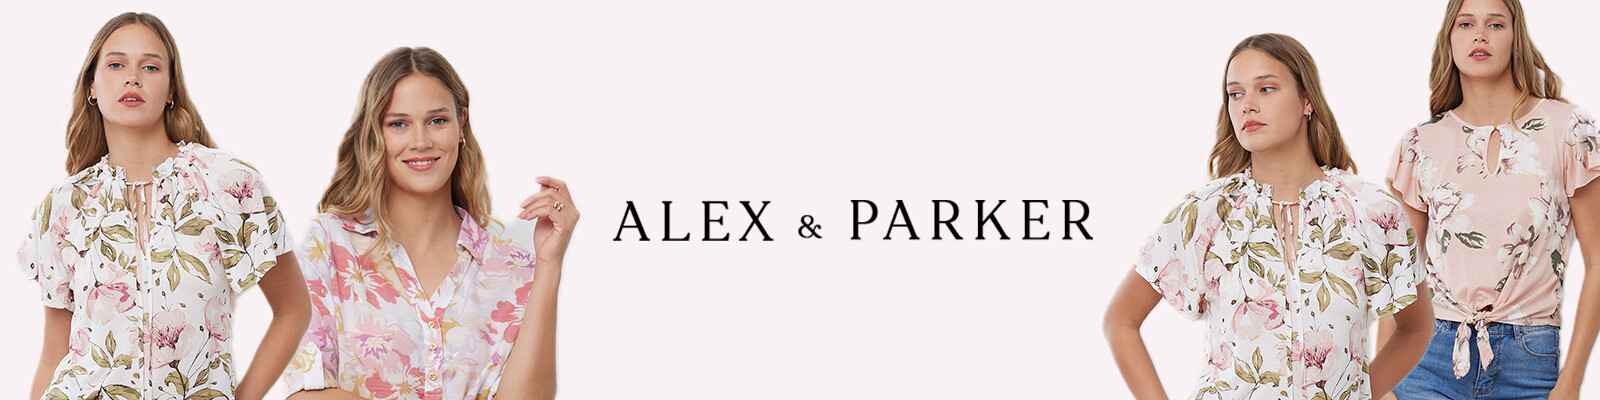 Alex & Parker